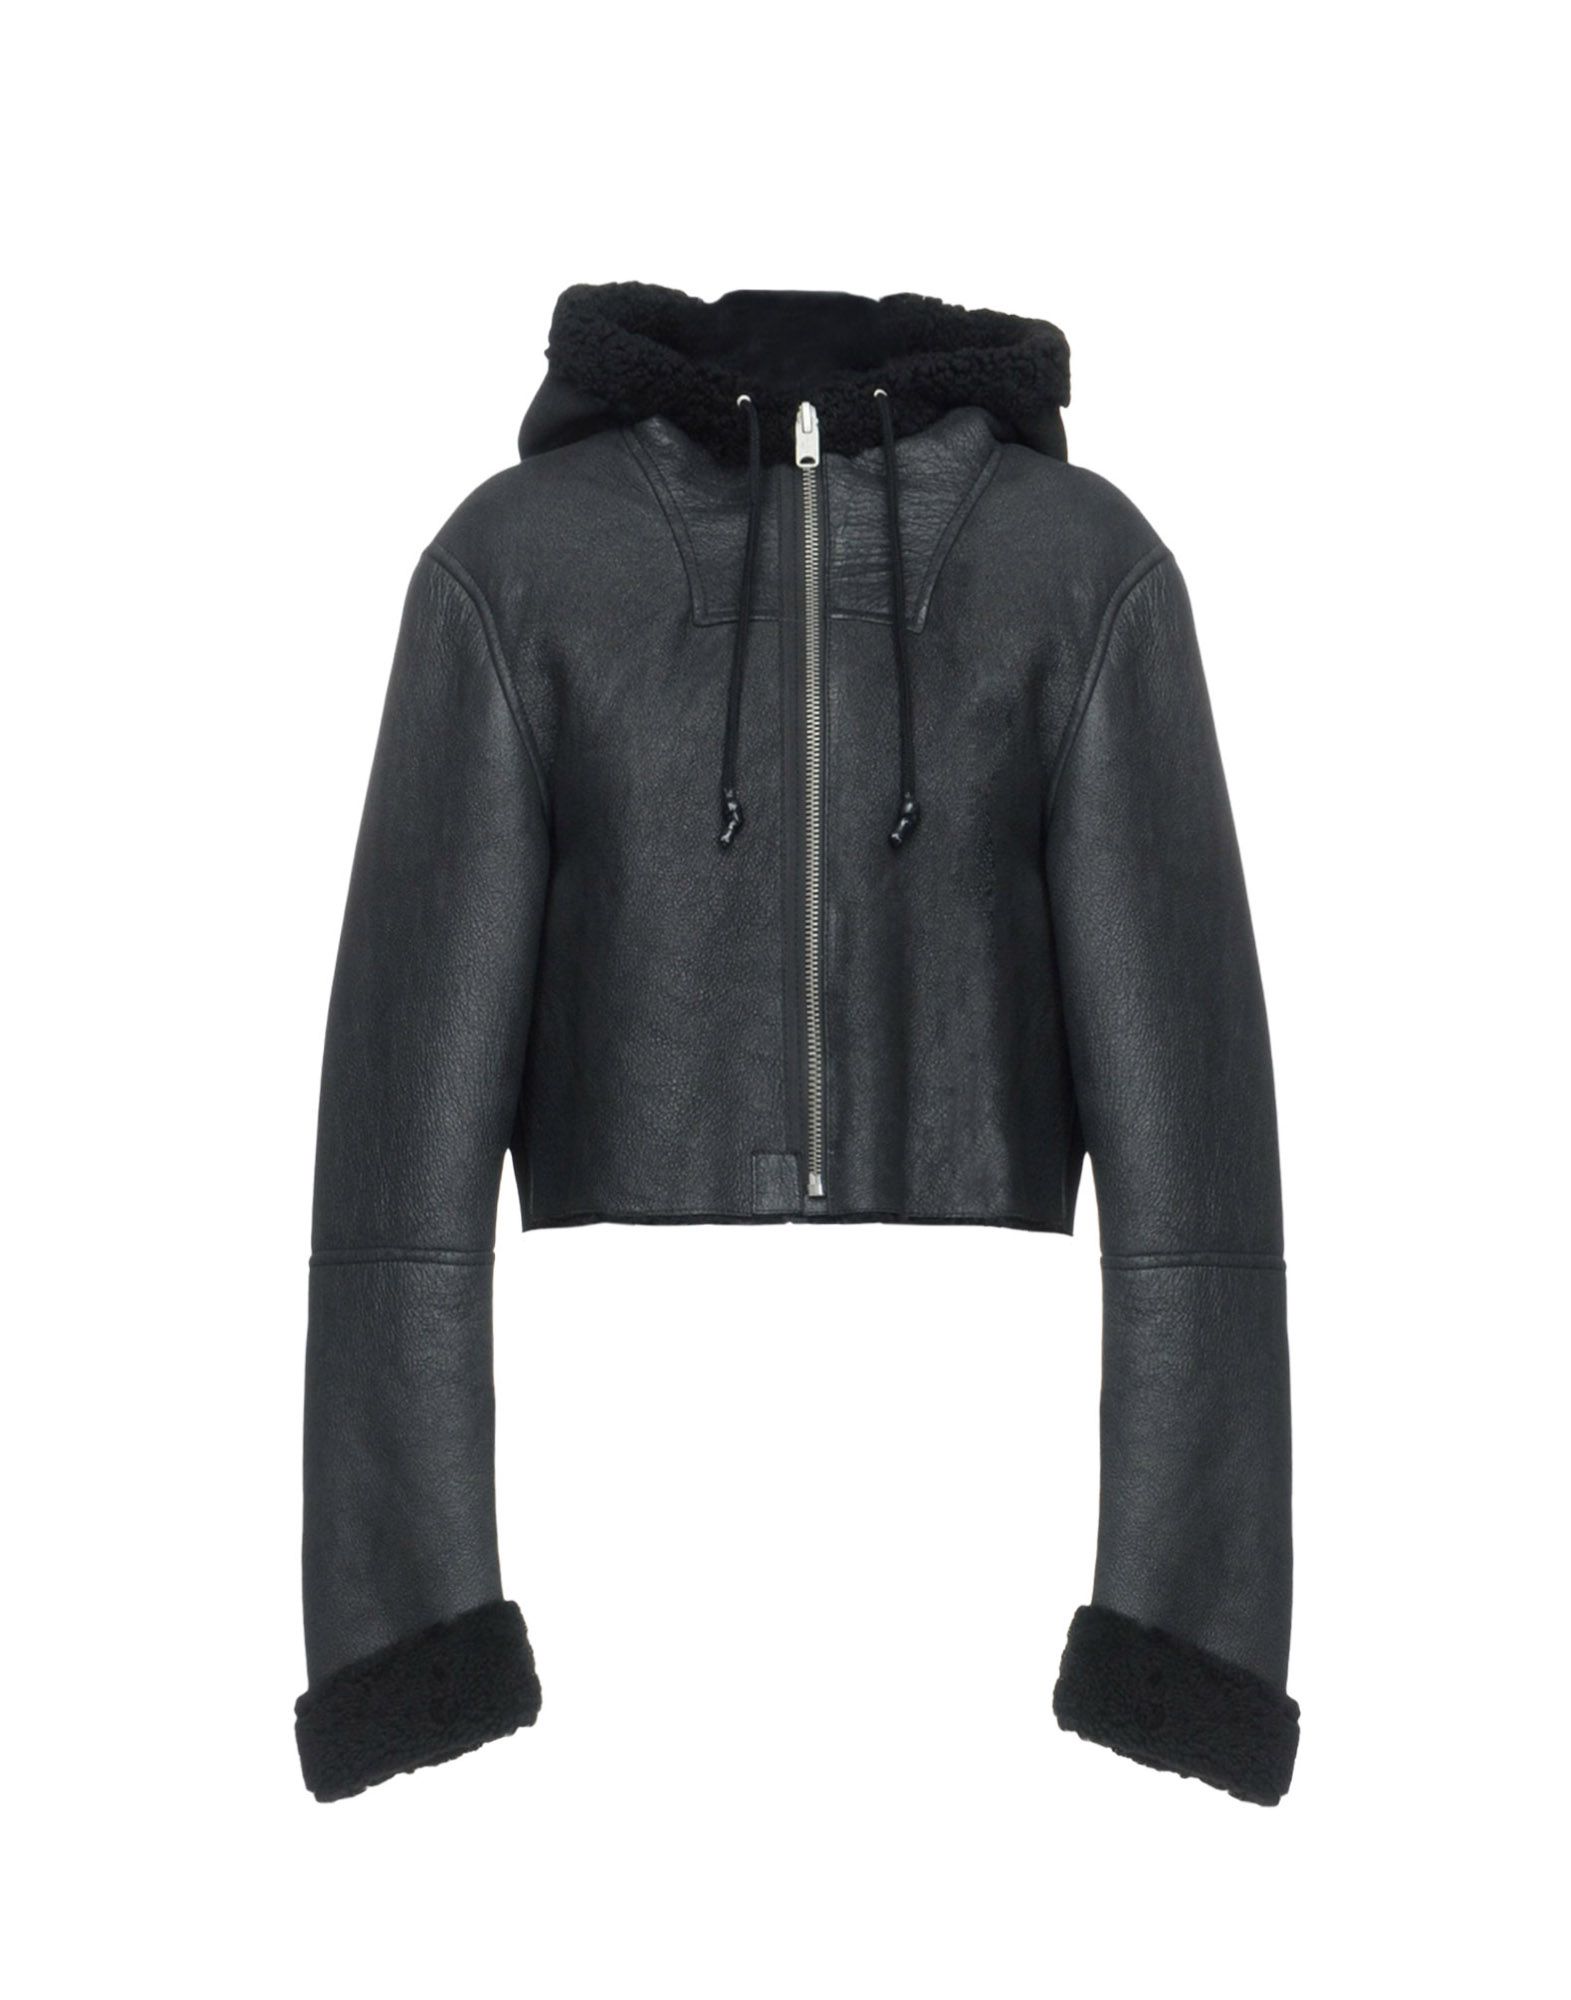 YEEZY Leather jacket,41809576SL 3